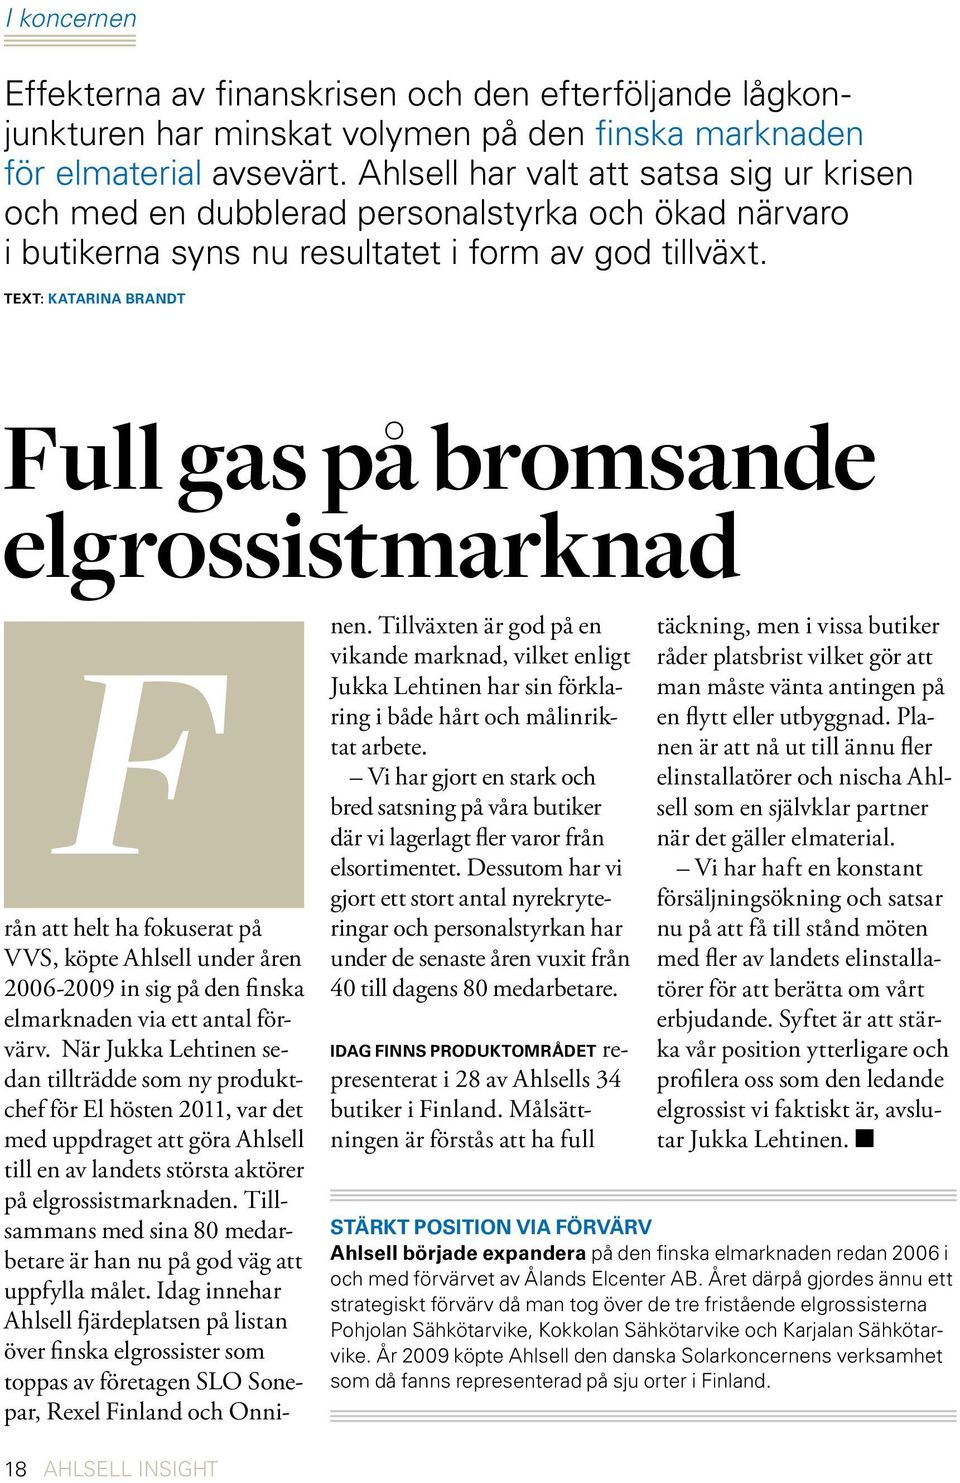 Text: katarina brandt Full gas på bromsande elgrossistmarknad F nen. Tillväxten är god på en vikande marknad, vilket enligt Jukka Lehtinen har sin förklaring i både hårt och målinriktat arbete.